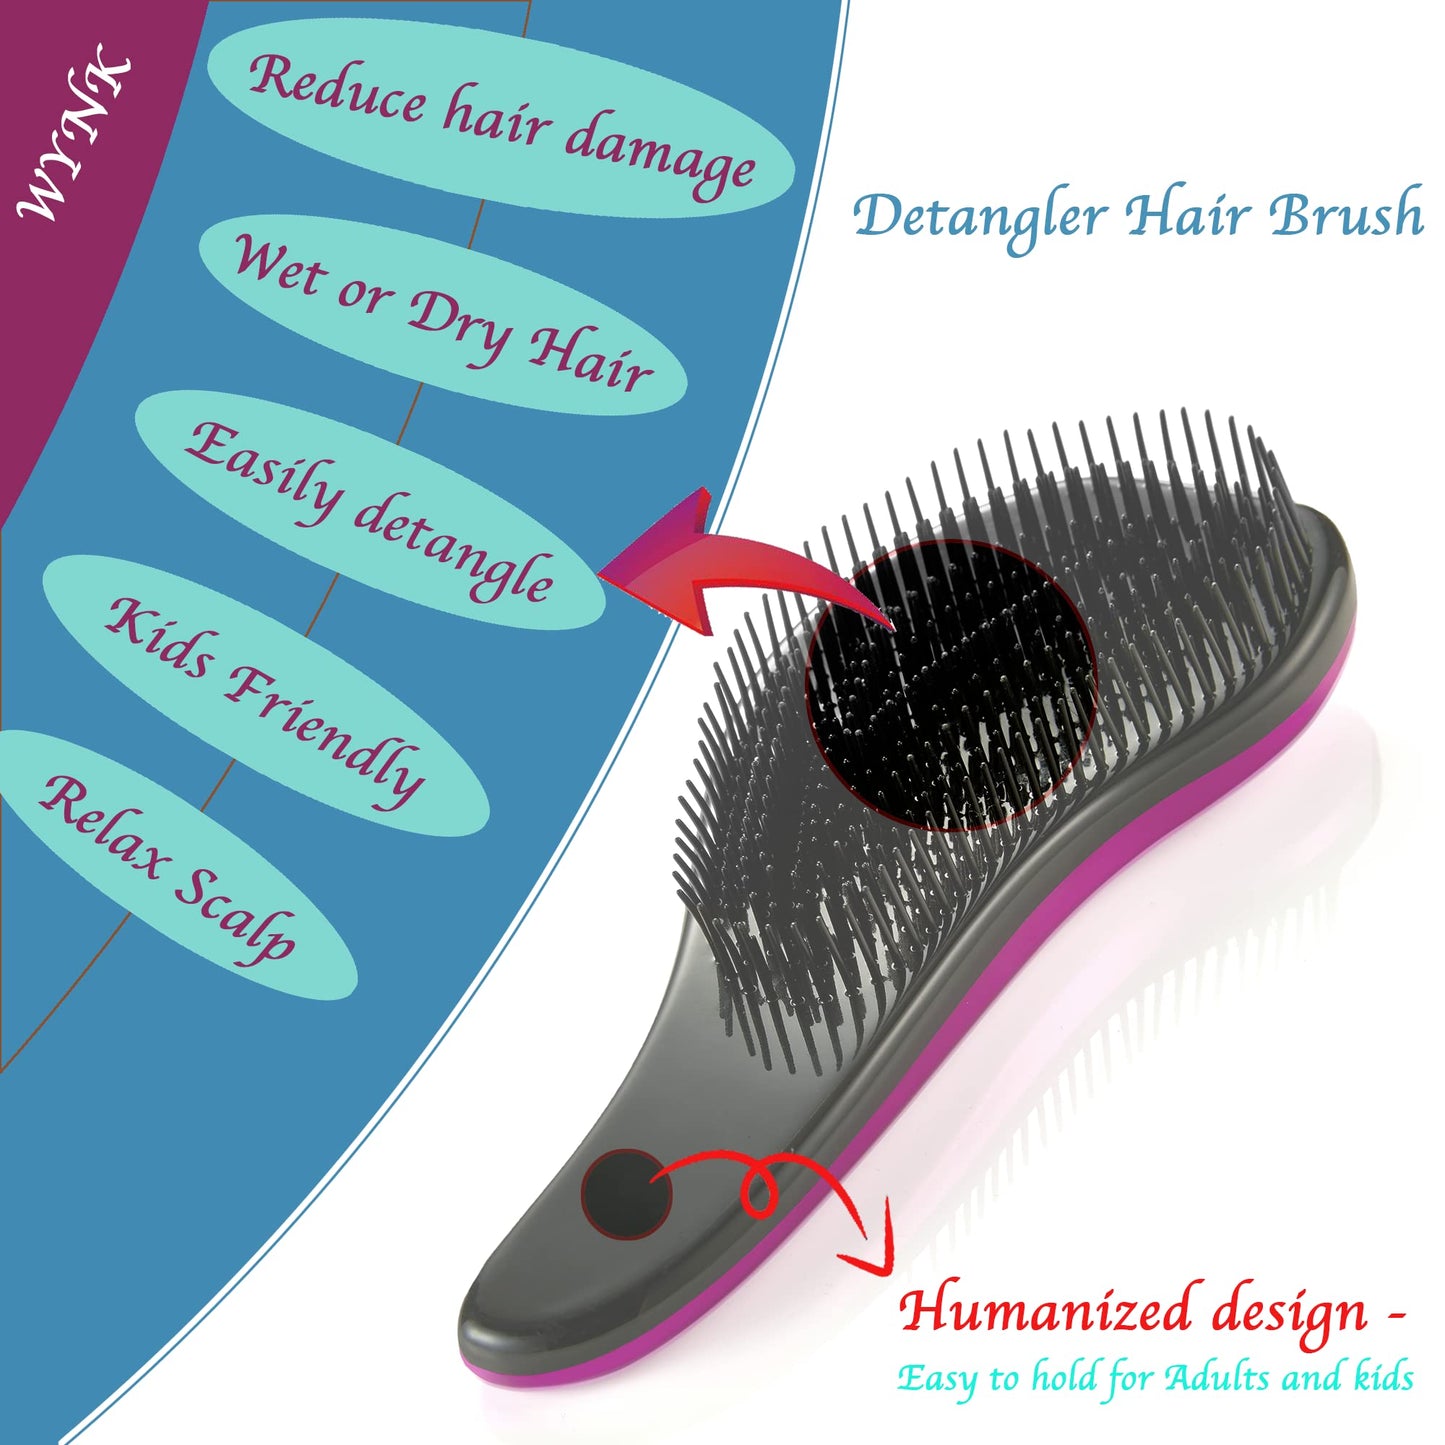 WYNK Detangler Brush - 2-Piece Value Set - Wet Detangling Hair Brush,Professional No Pain Detangler for Women,Men,Kids (2 Pack, Green&Pink)